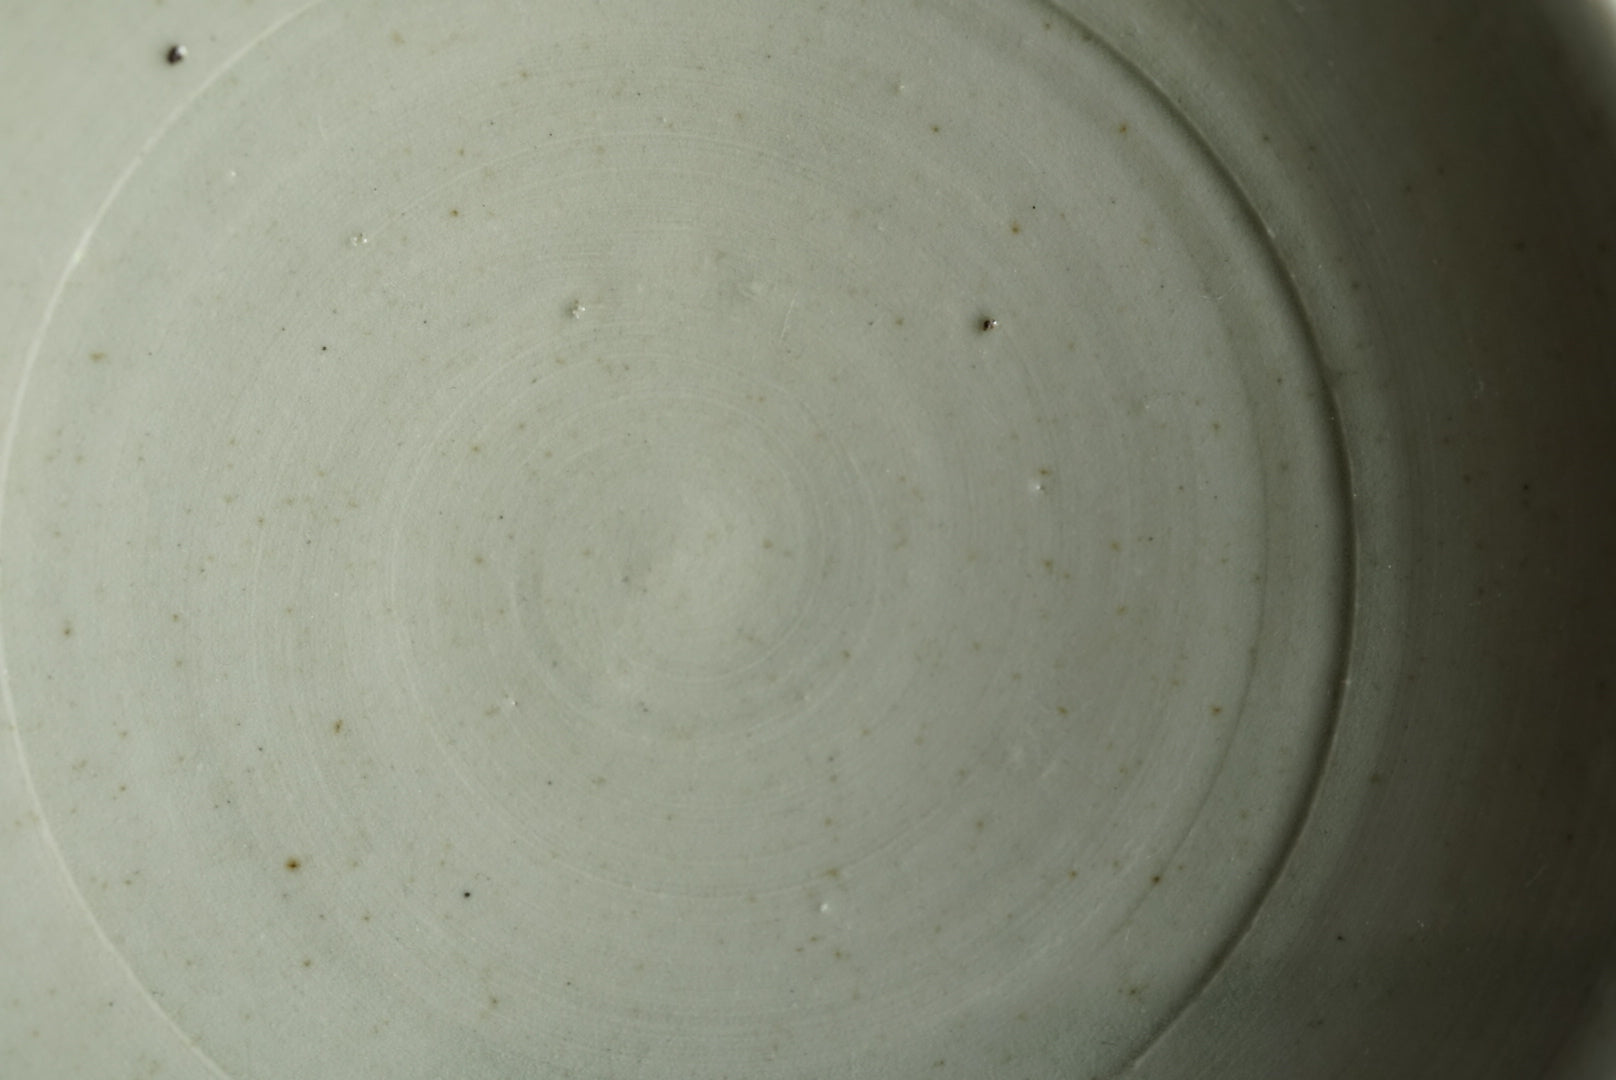 White 瓷 5 -inch plate / Masahiro Takeka